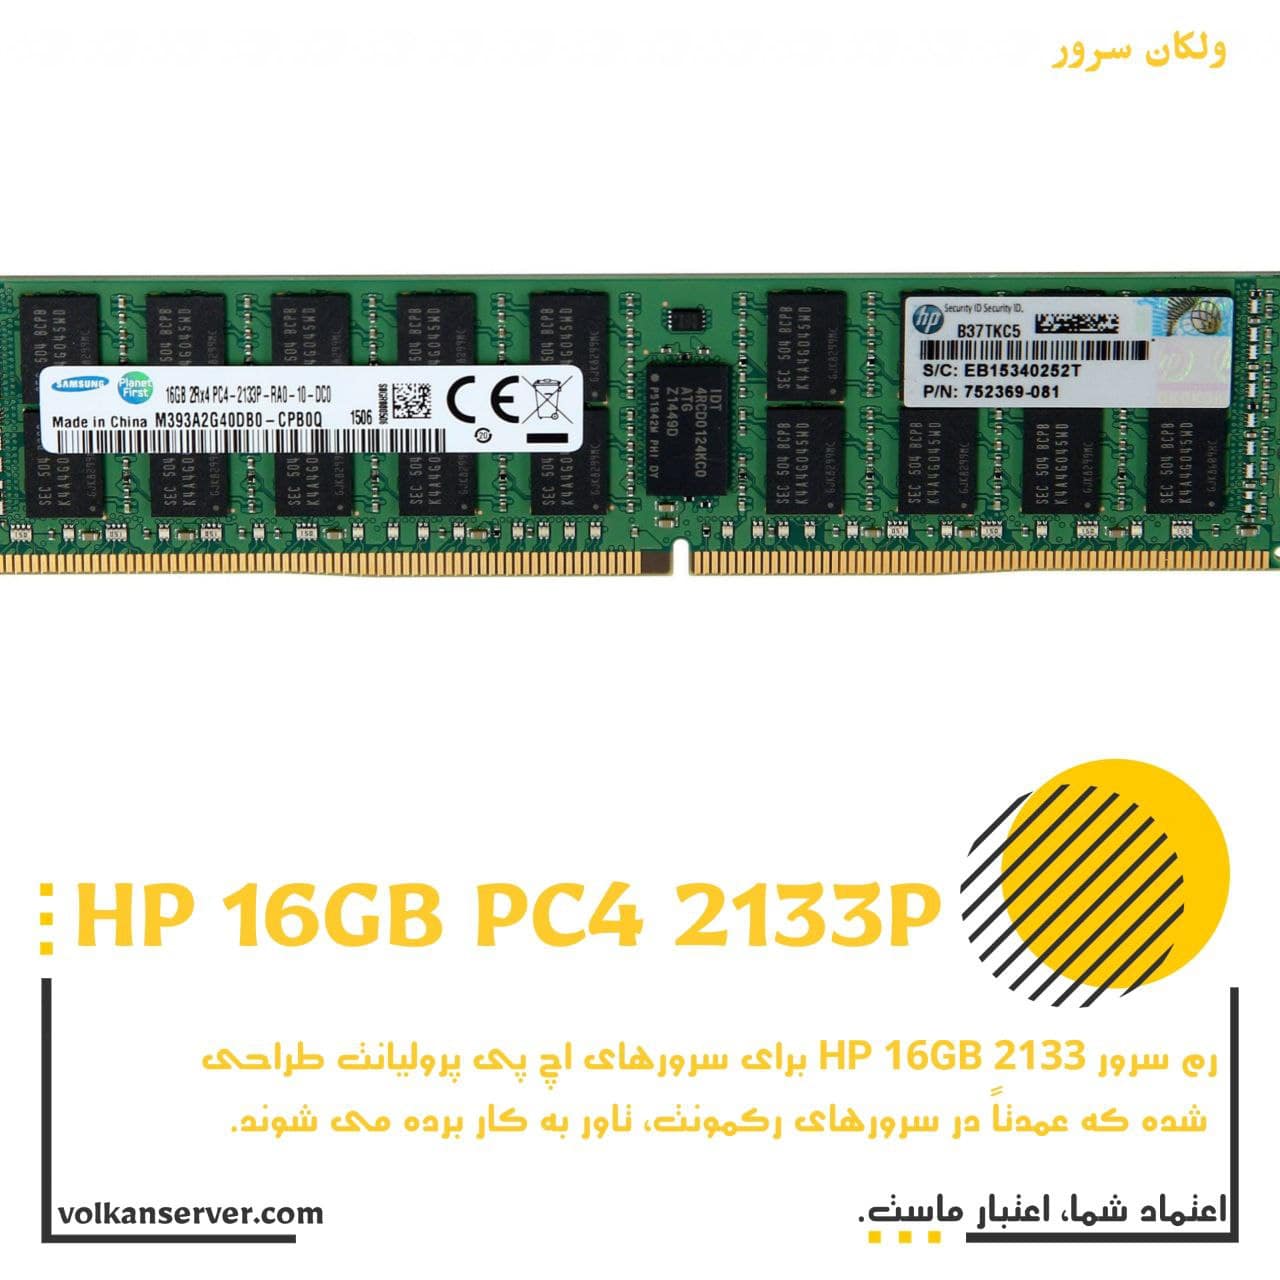 رم سرور HPE 16GB PC4 2133